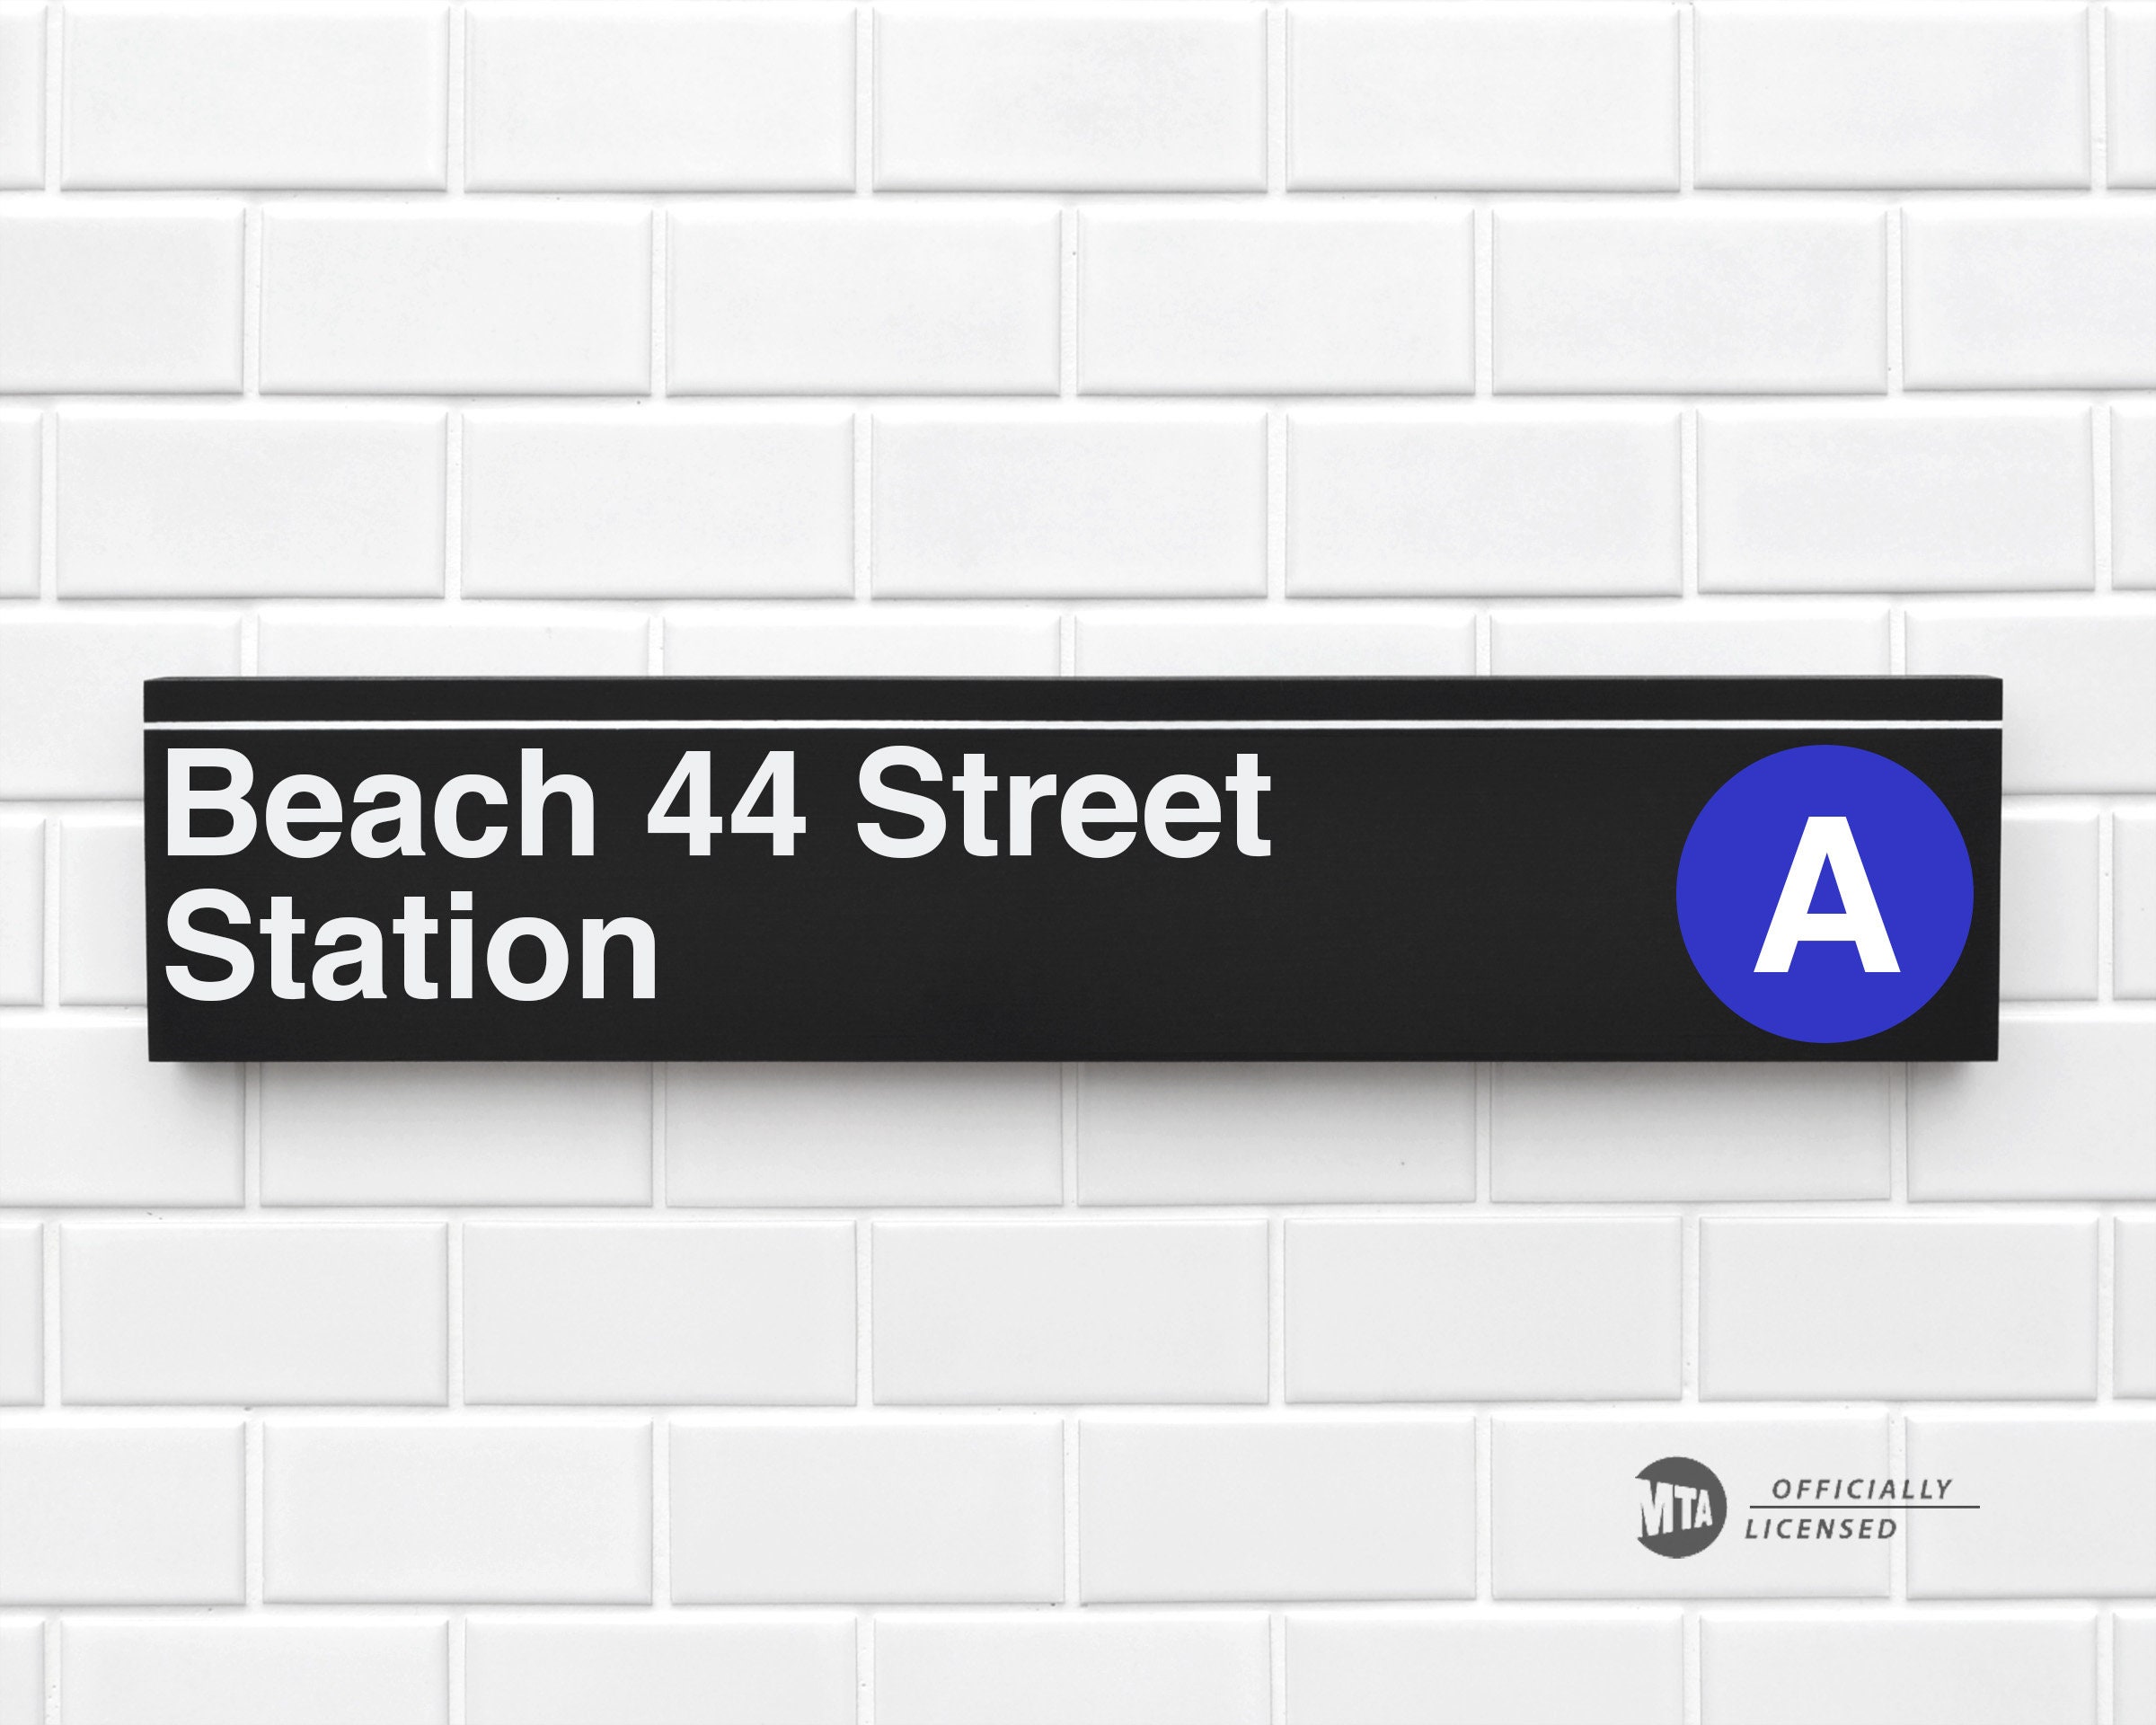 Back station. Subway NYC sign. Subway sign.